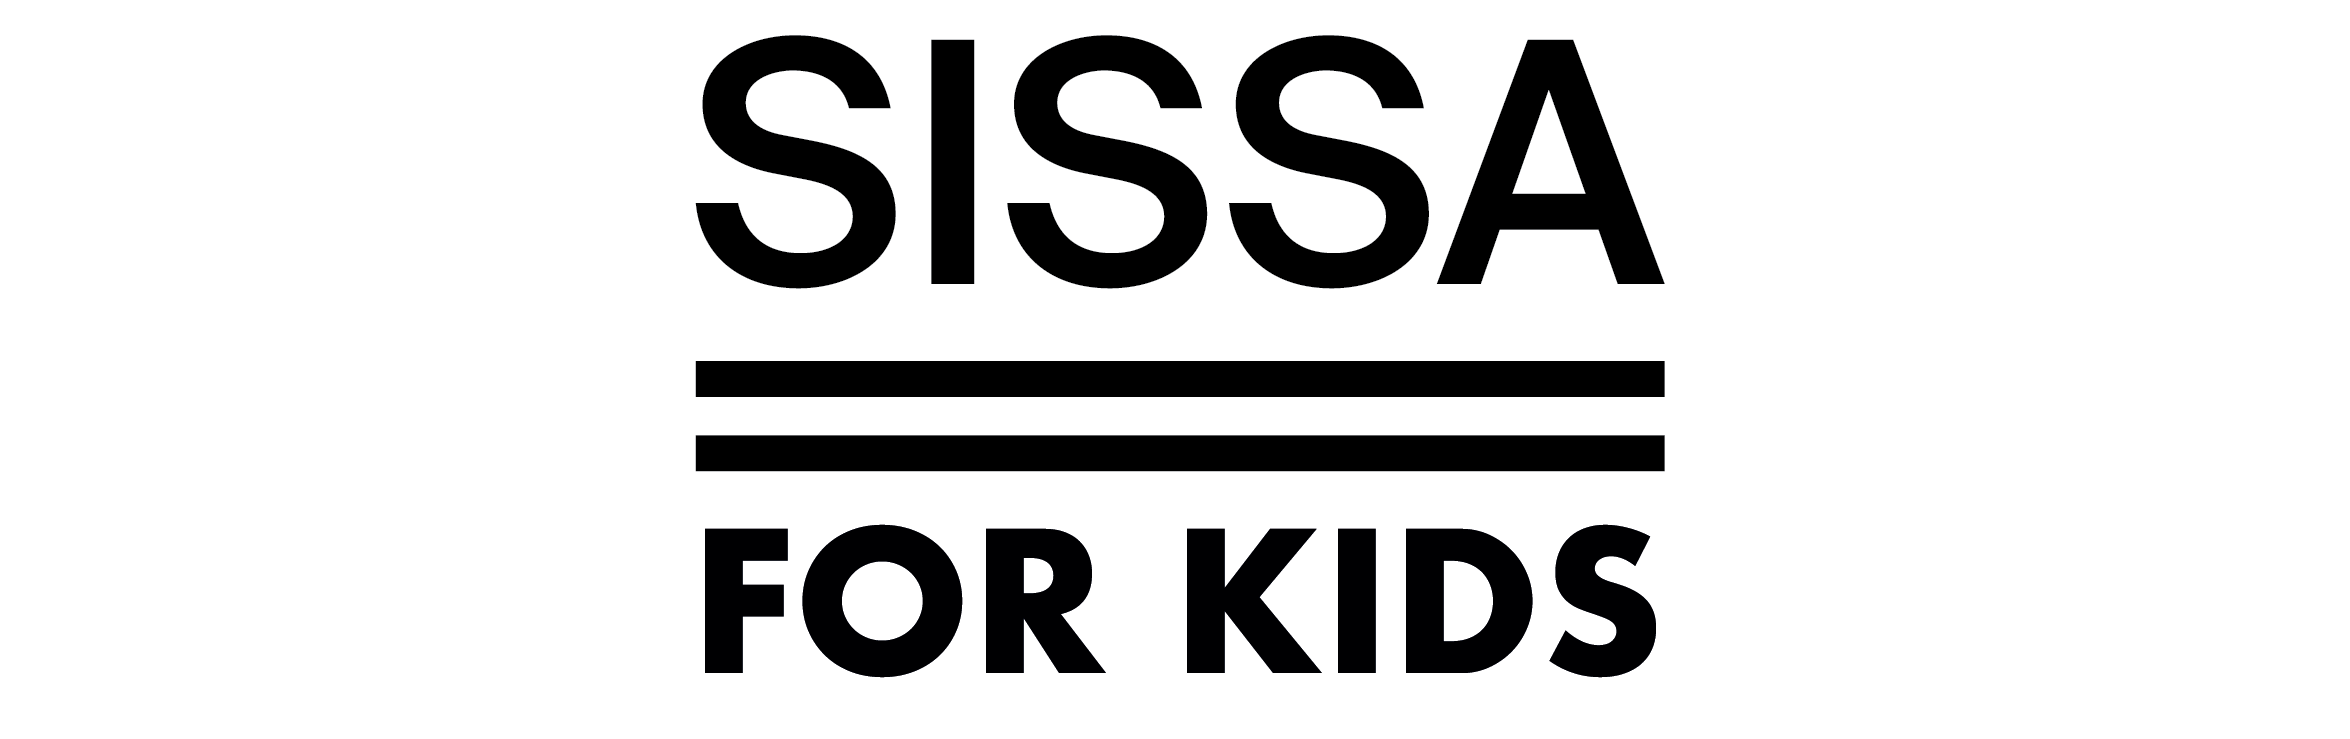 Sissa for Kids